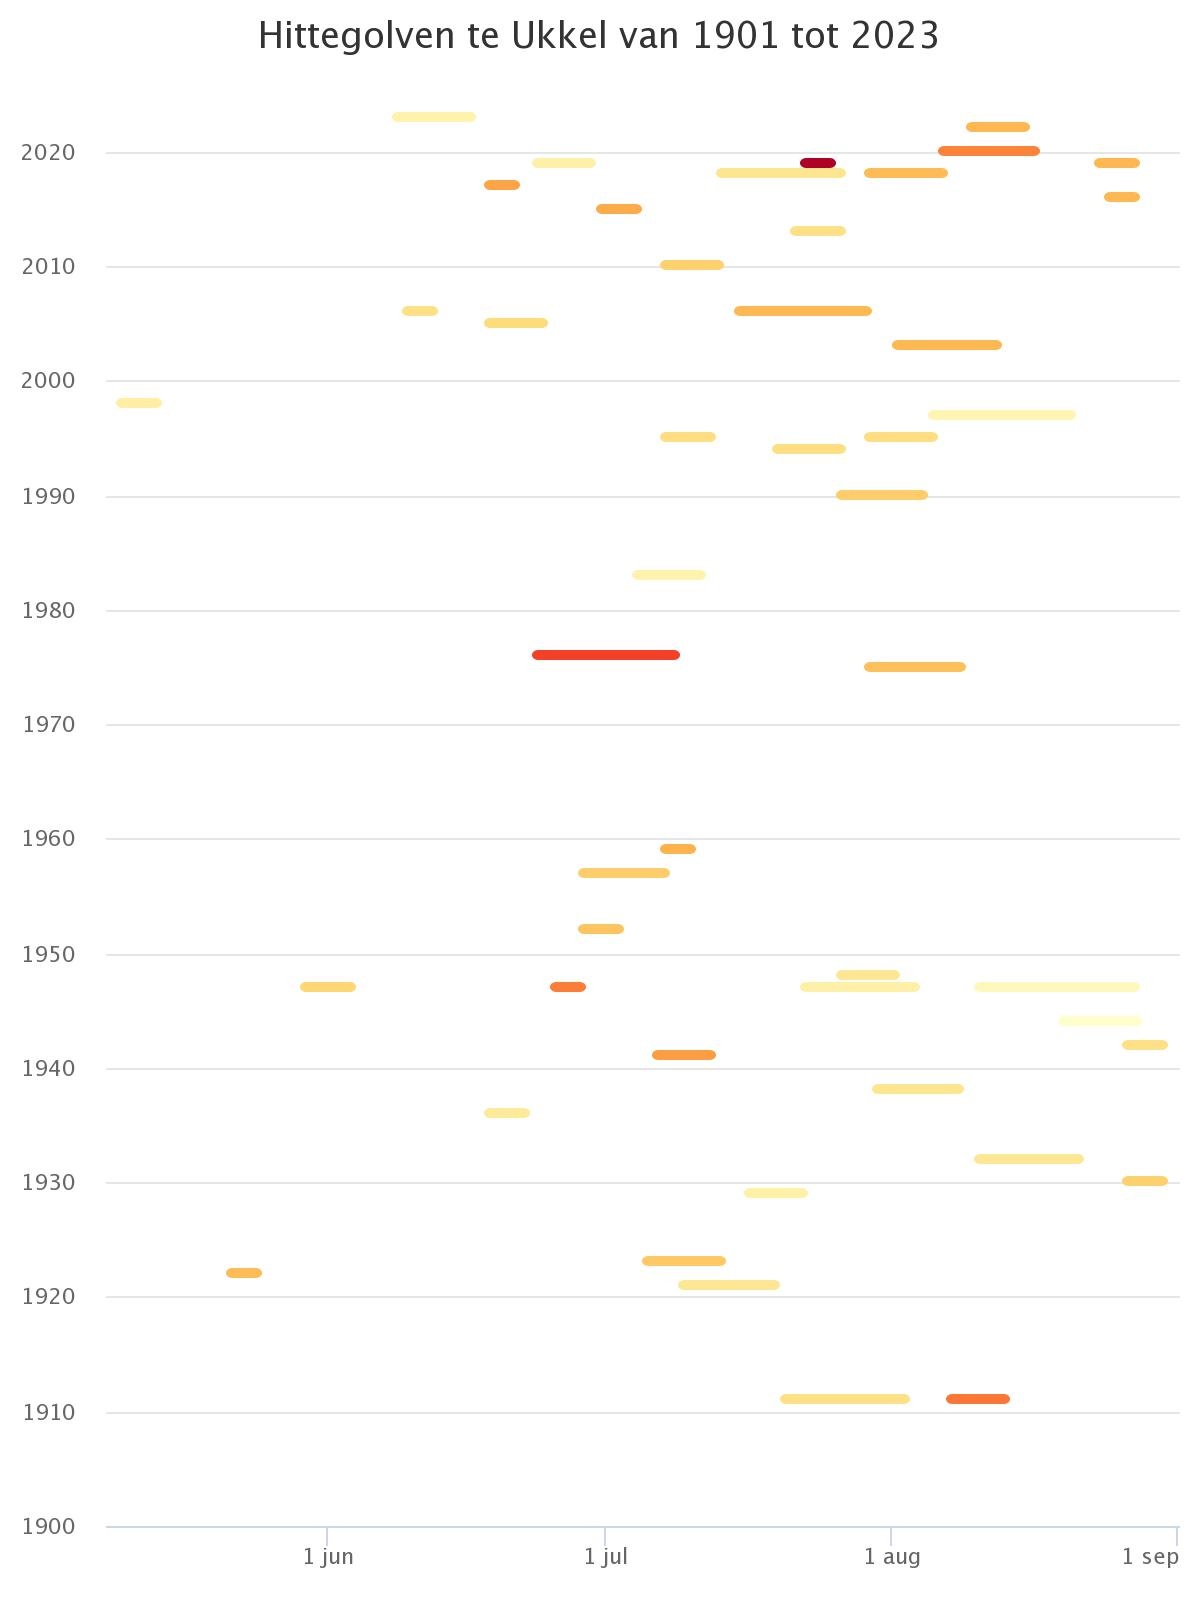 Deze figuur geeft een overzicht van de hittegolven waargenomen in Ukkel sinds 1901. Elke hittegolf wordt voorgesteld door een horizontaal segment uitgestrekt over de periode van het jaar waarin deze plaatsvond. De kleur van elk segment is in functie van de intensiteit van de hittegolf (gedefinieerd door het gemiddelde van de maximumtemperaturen tijdens de hittegolf).